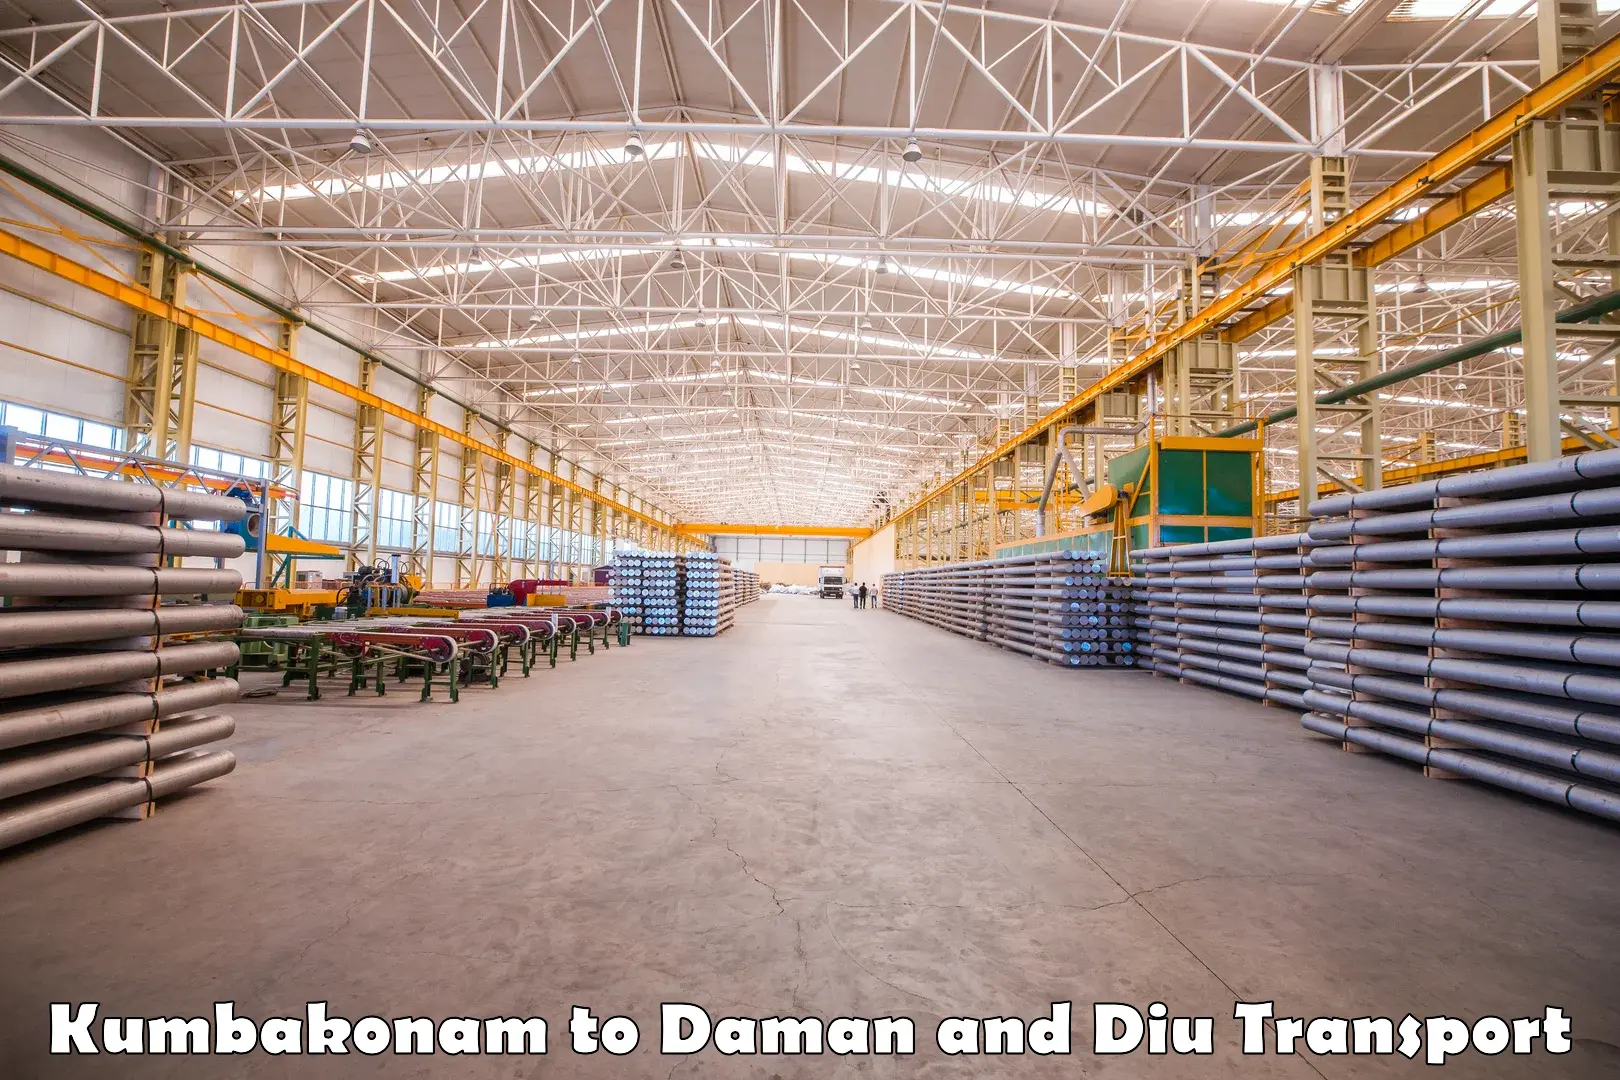 Logistics transportation services in Kumbakonam to Daman and Diu